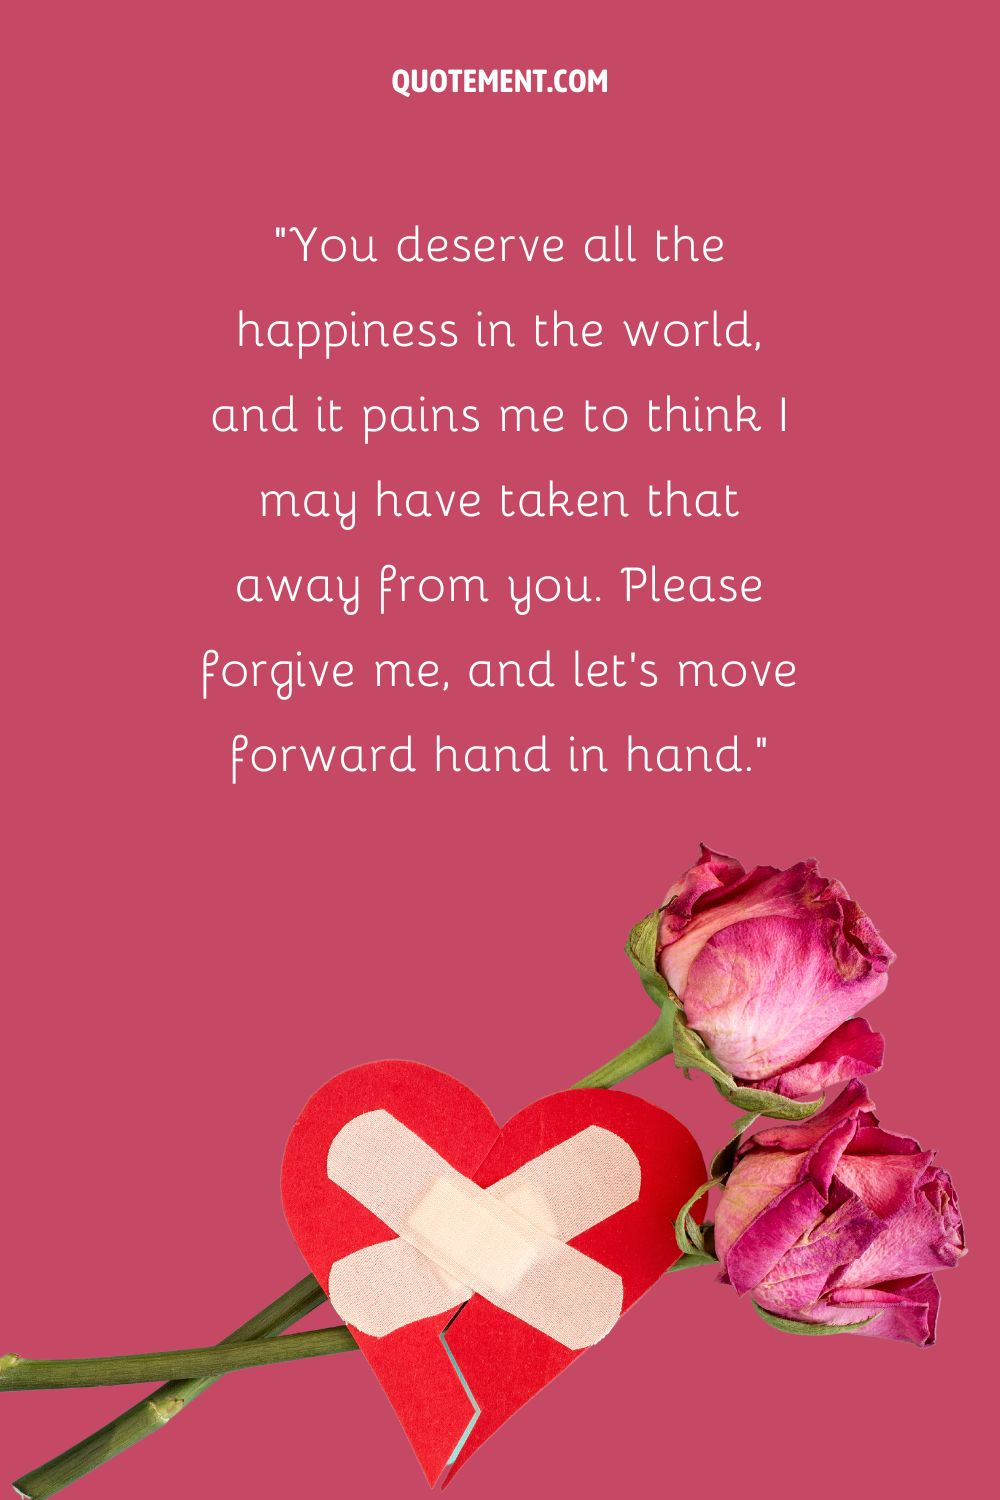 Un corazón de papel con una venda sobre dos rosas rosas que representa un emotivo mensaje de disculpa para el novio